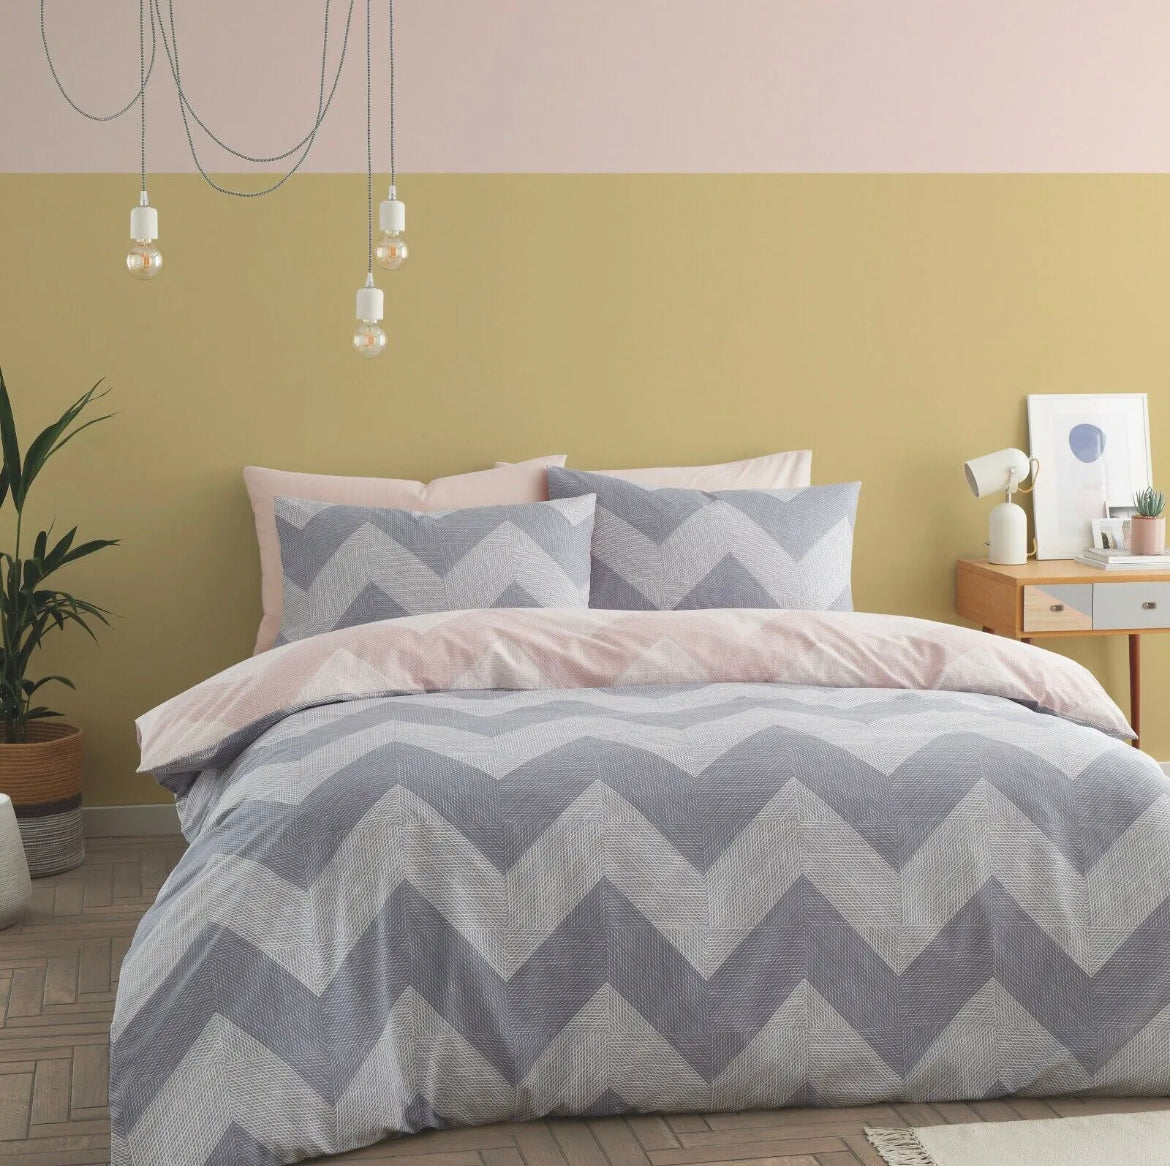 Pink/Grey Reversible Bedding Set